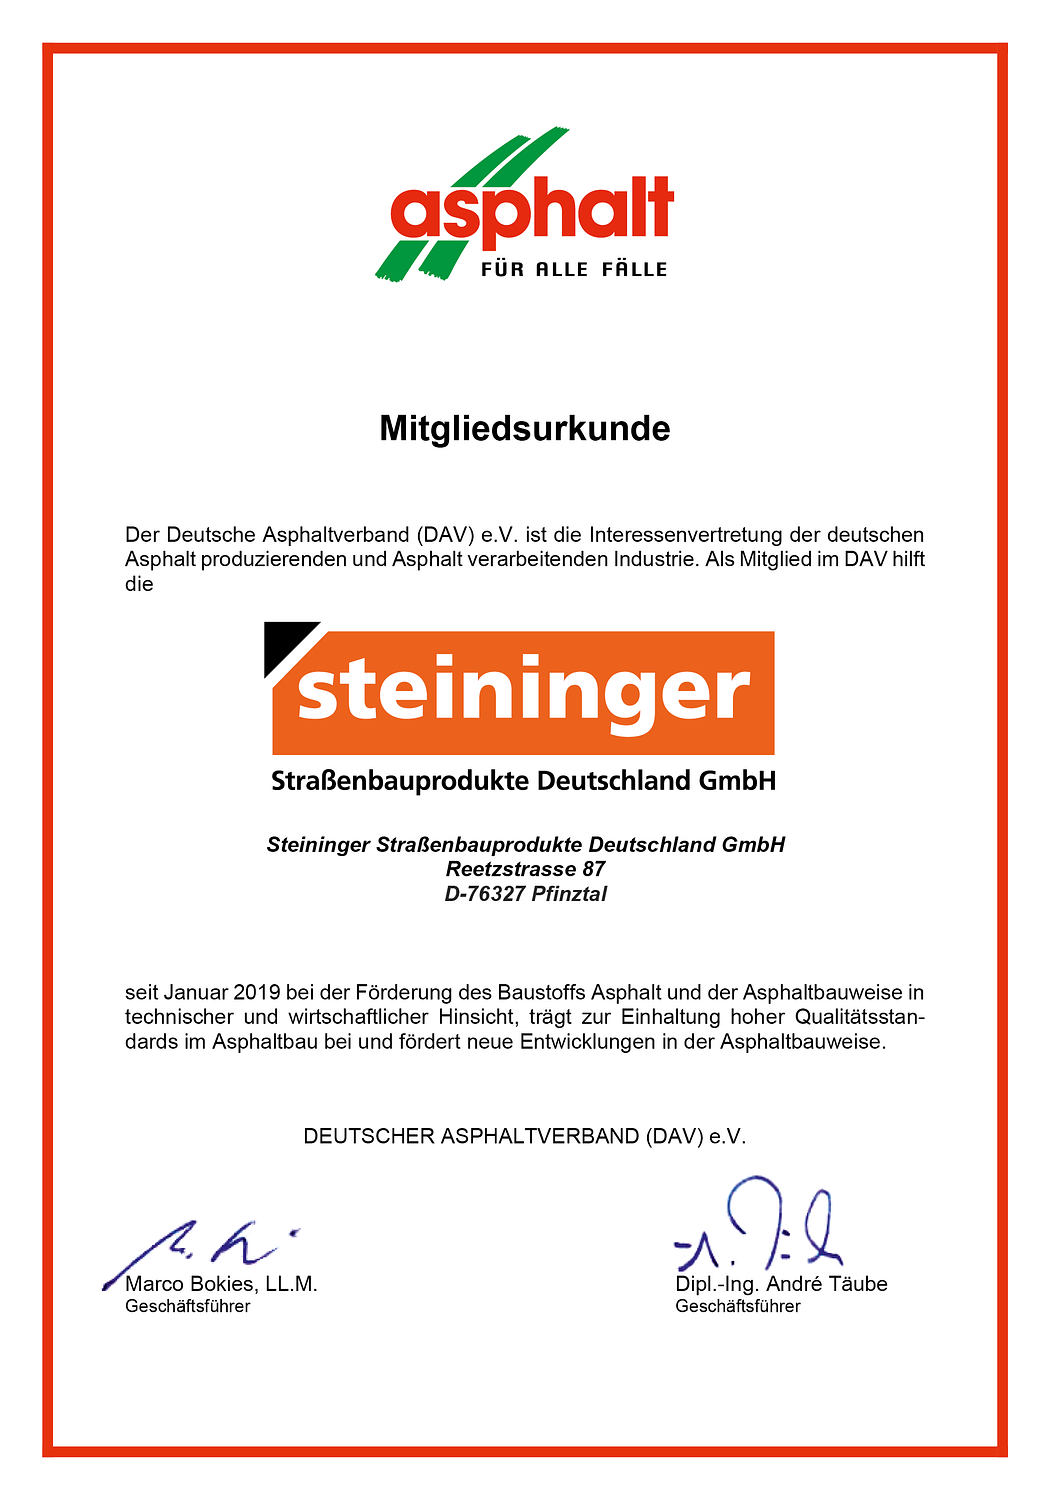 Steininger Mitgliedsurkunde Asphalt